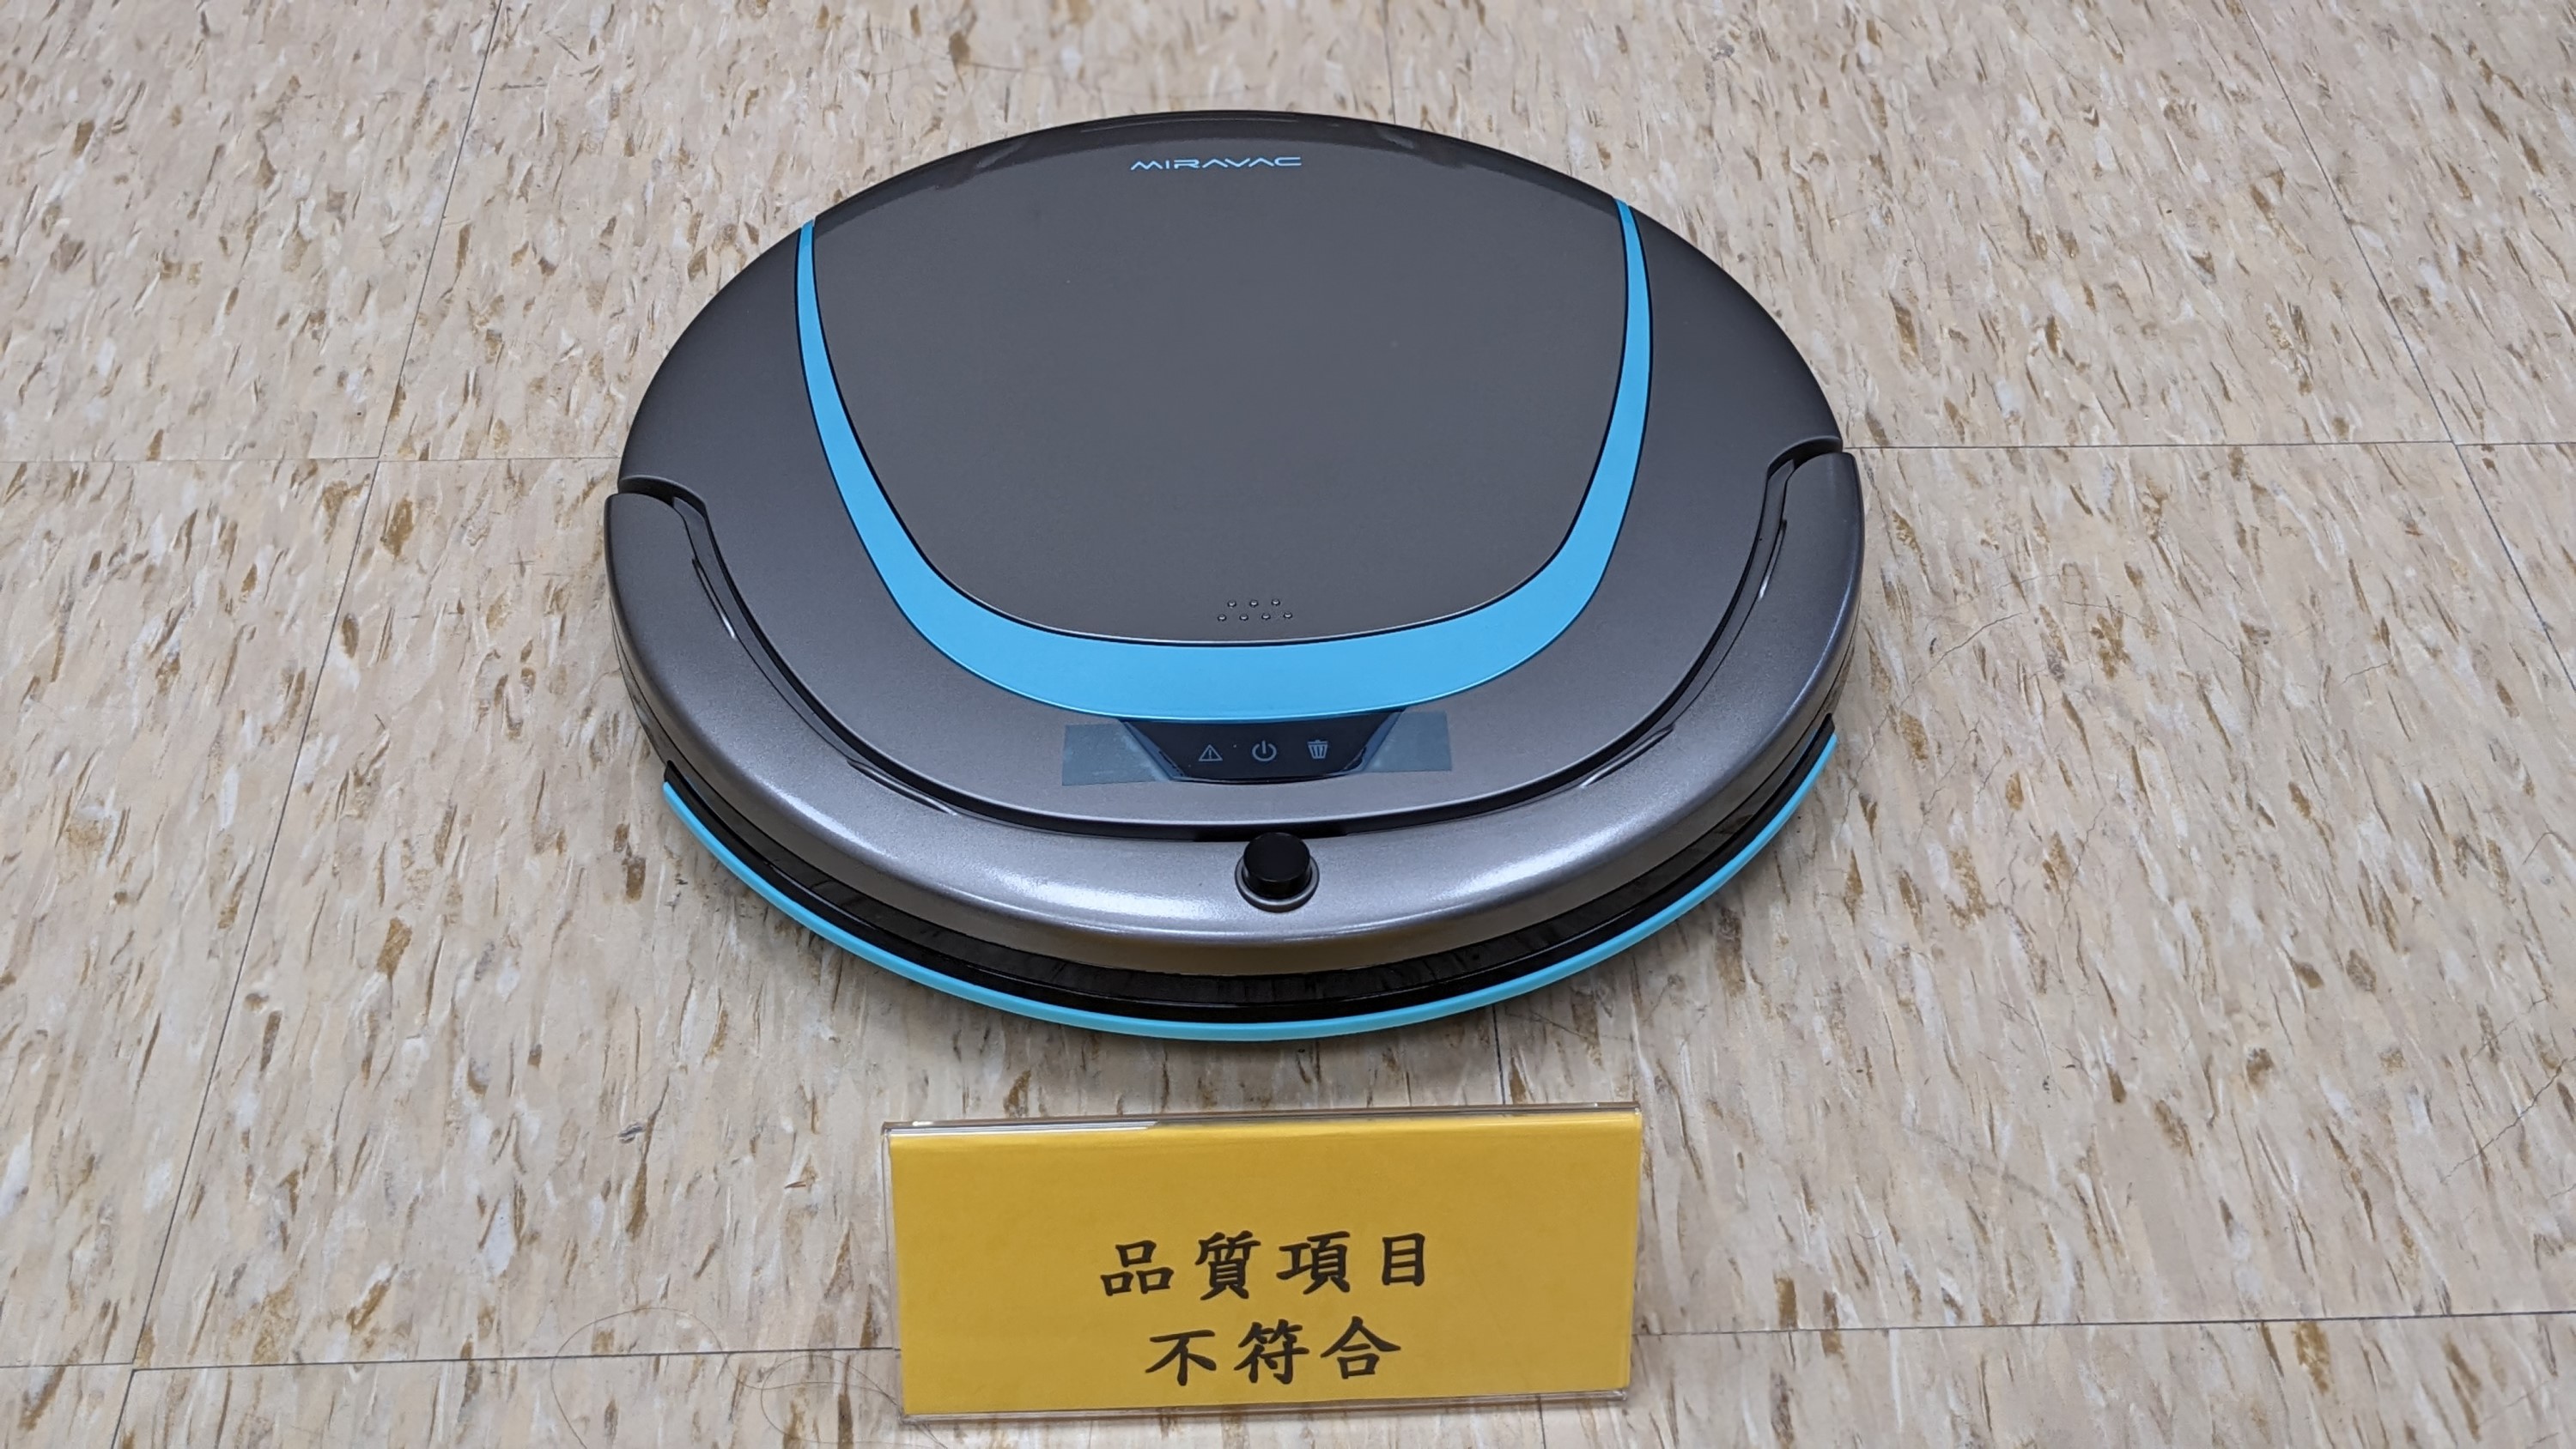 經濟部標準檢驗局與財團法人中華民國消費者文教基金會共同公布市售「掃地機器人」檢測結果